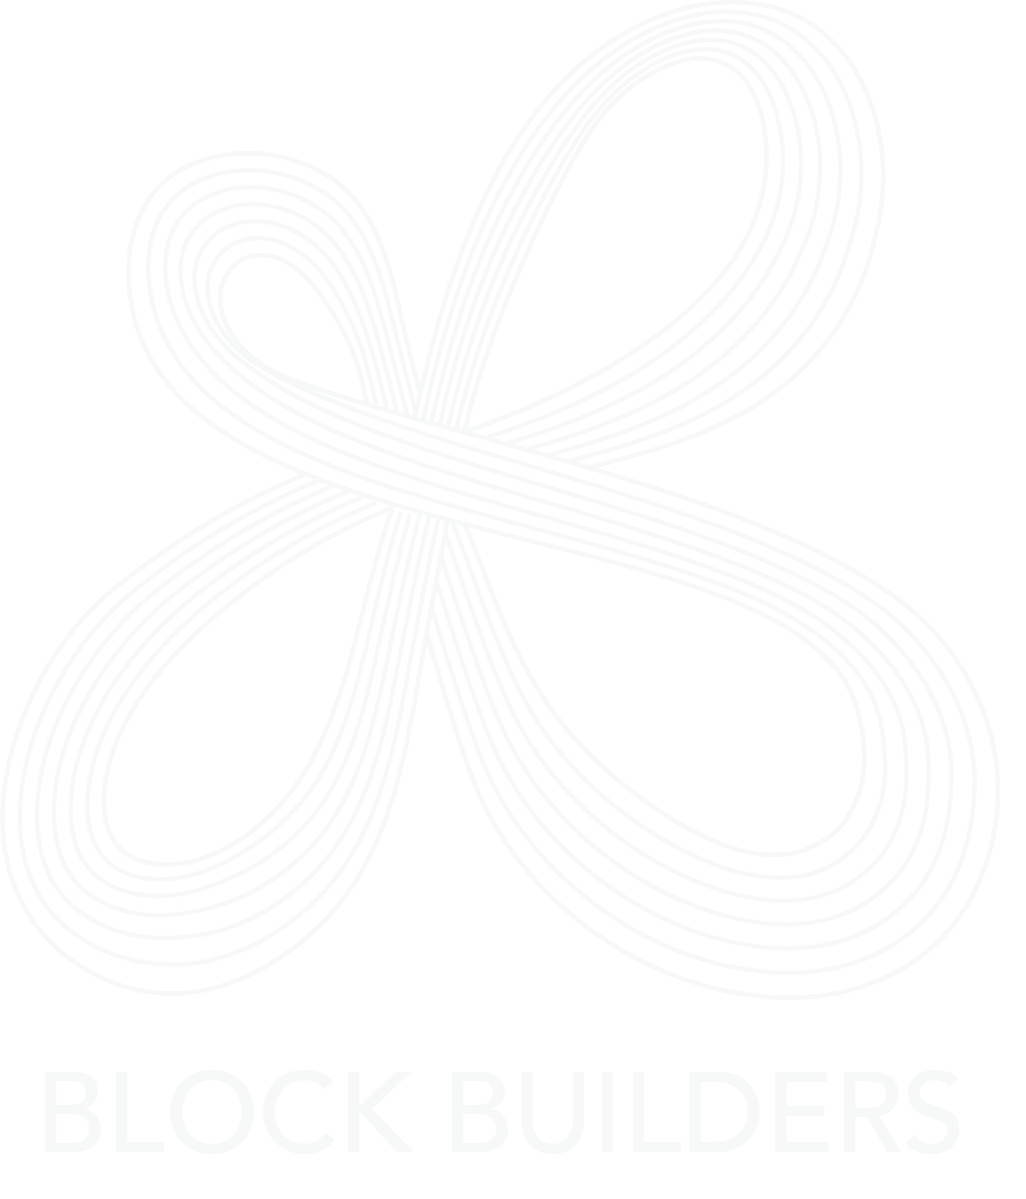 Block Builders Co.